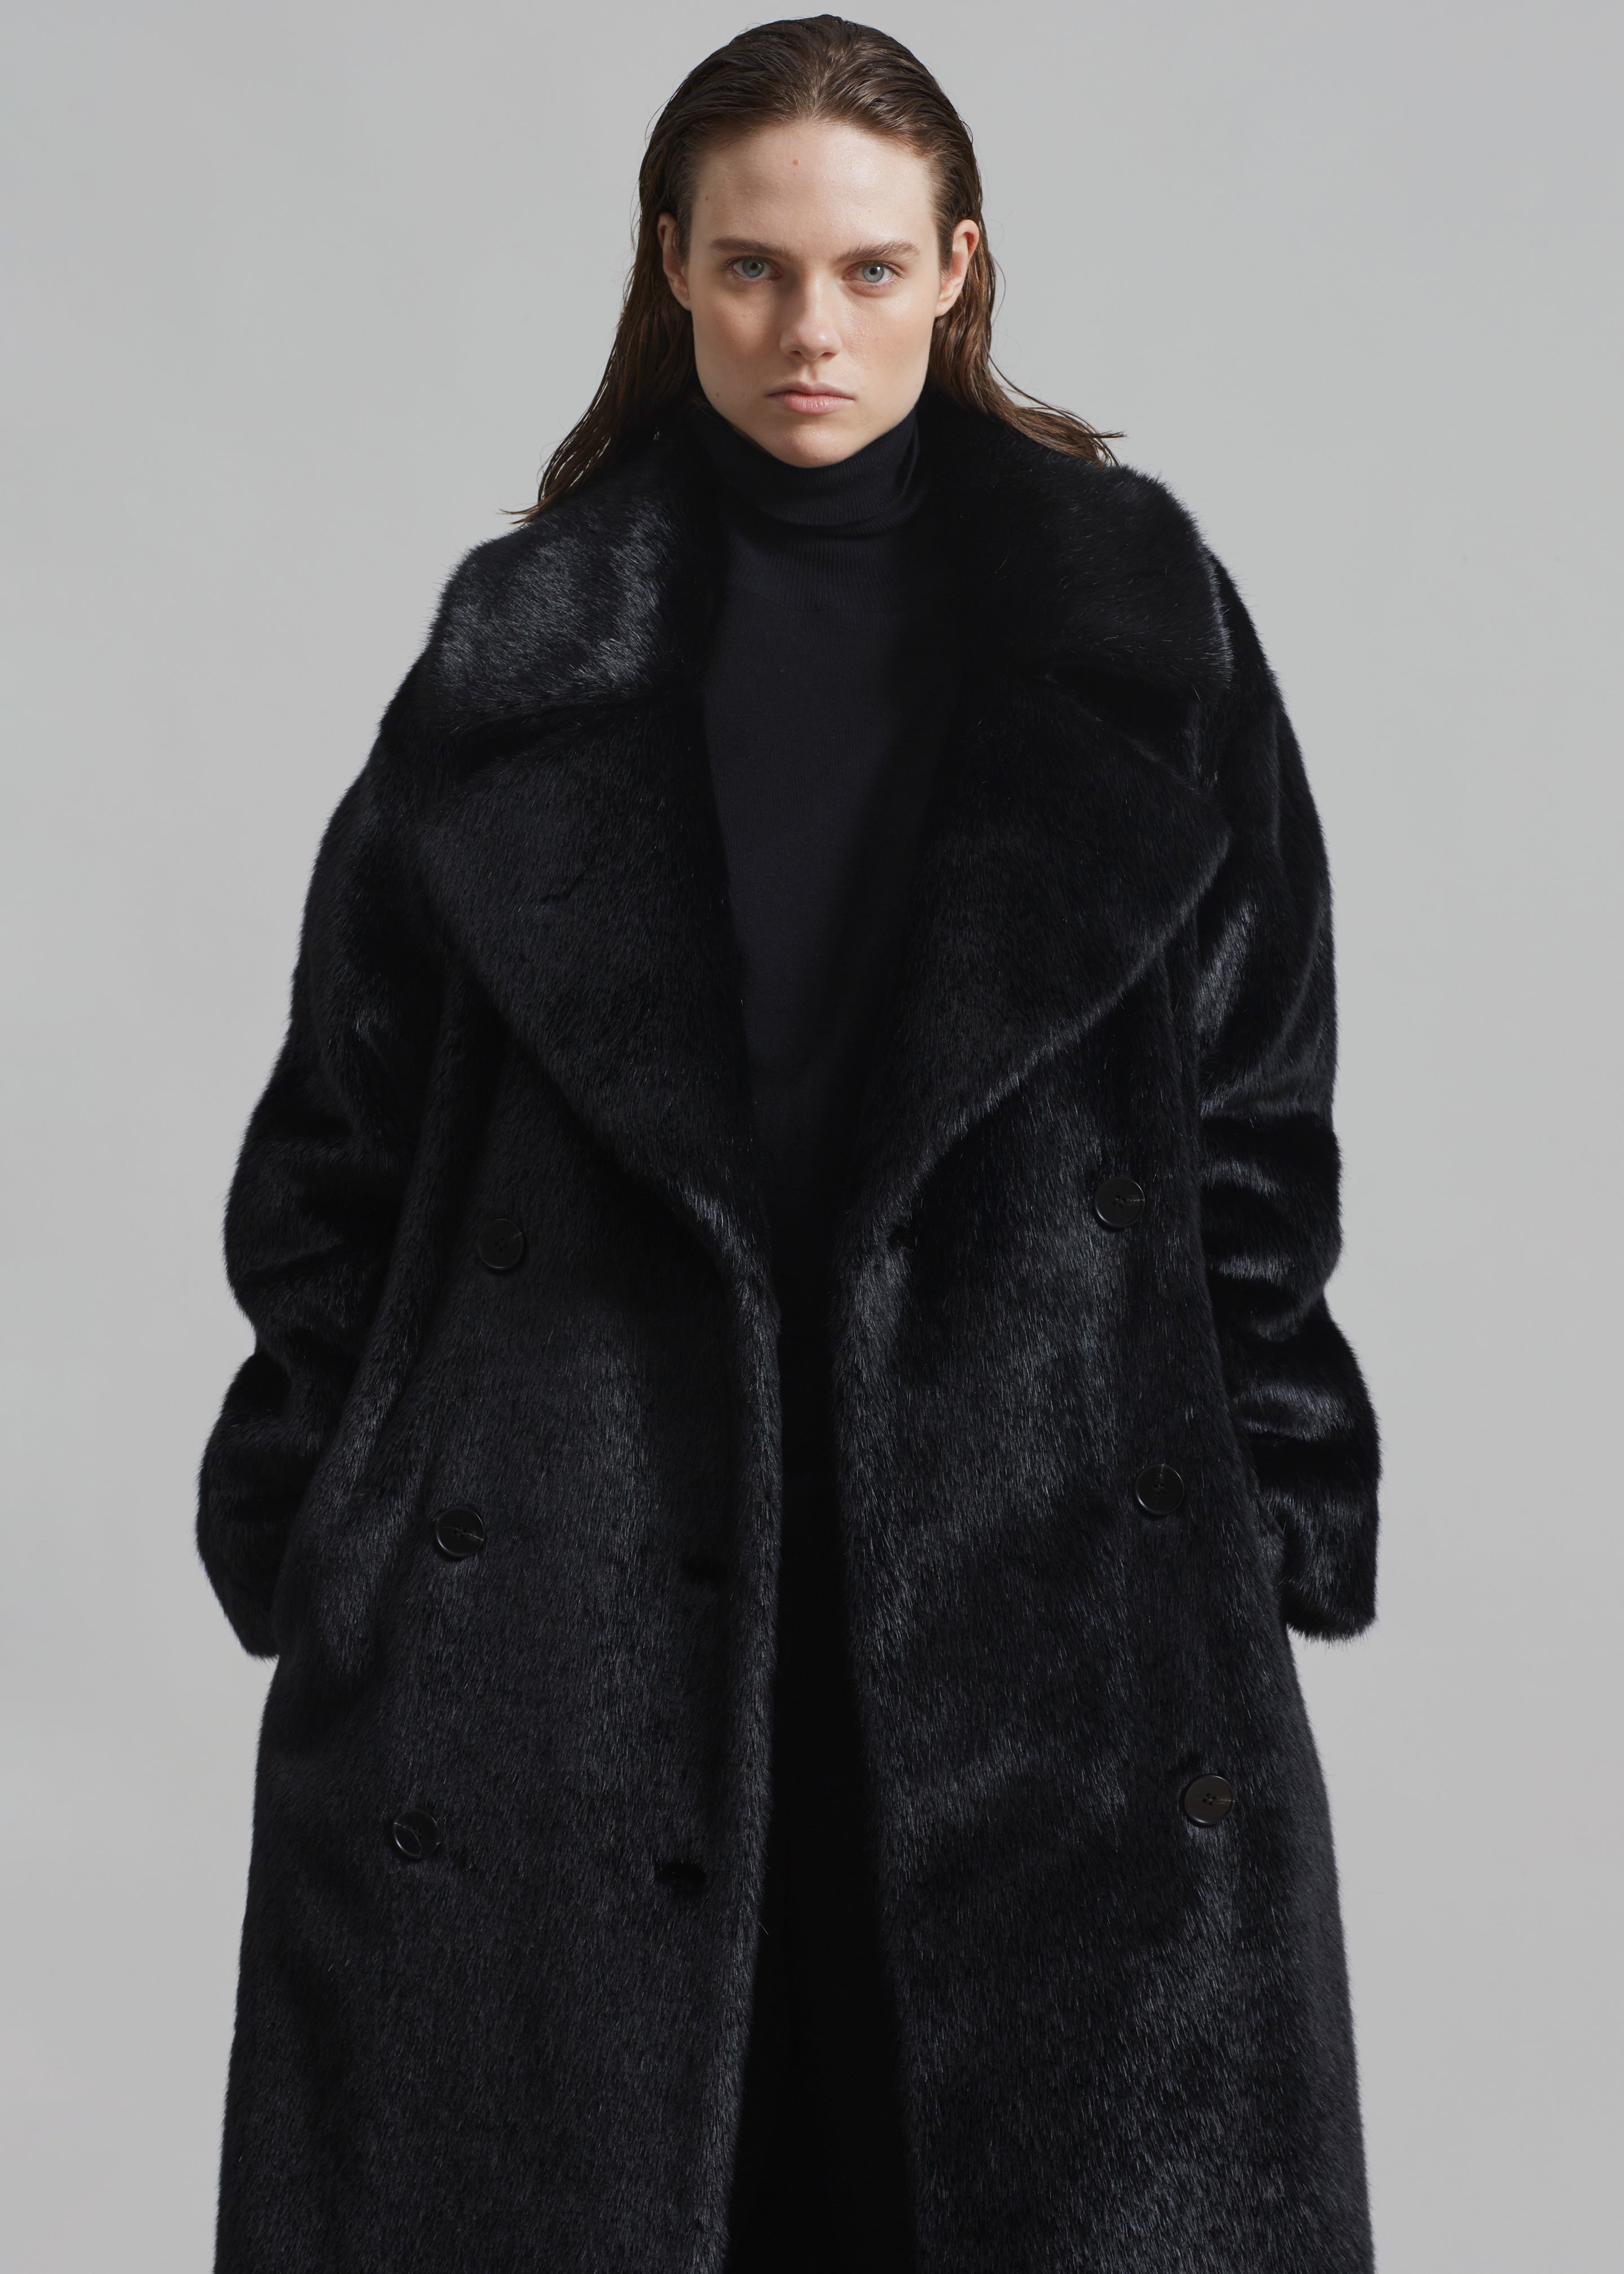 Joni Faux Fur Coat - Black - 2